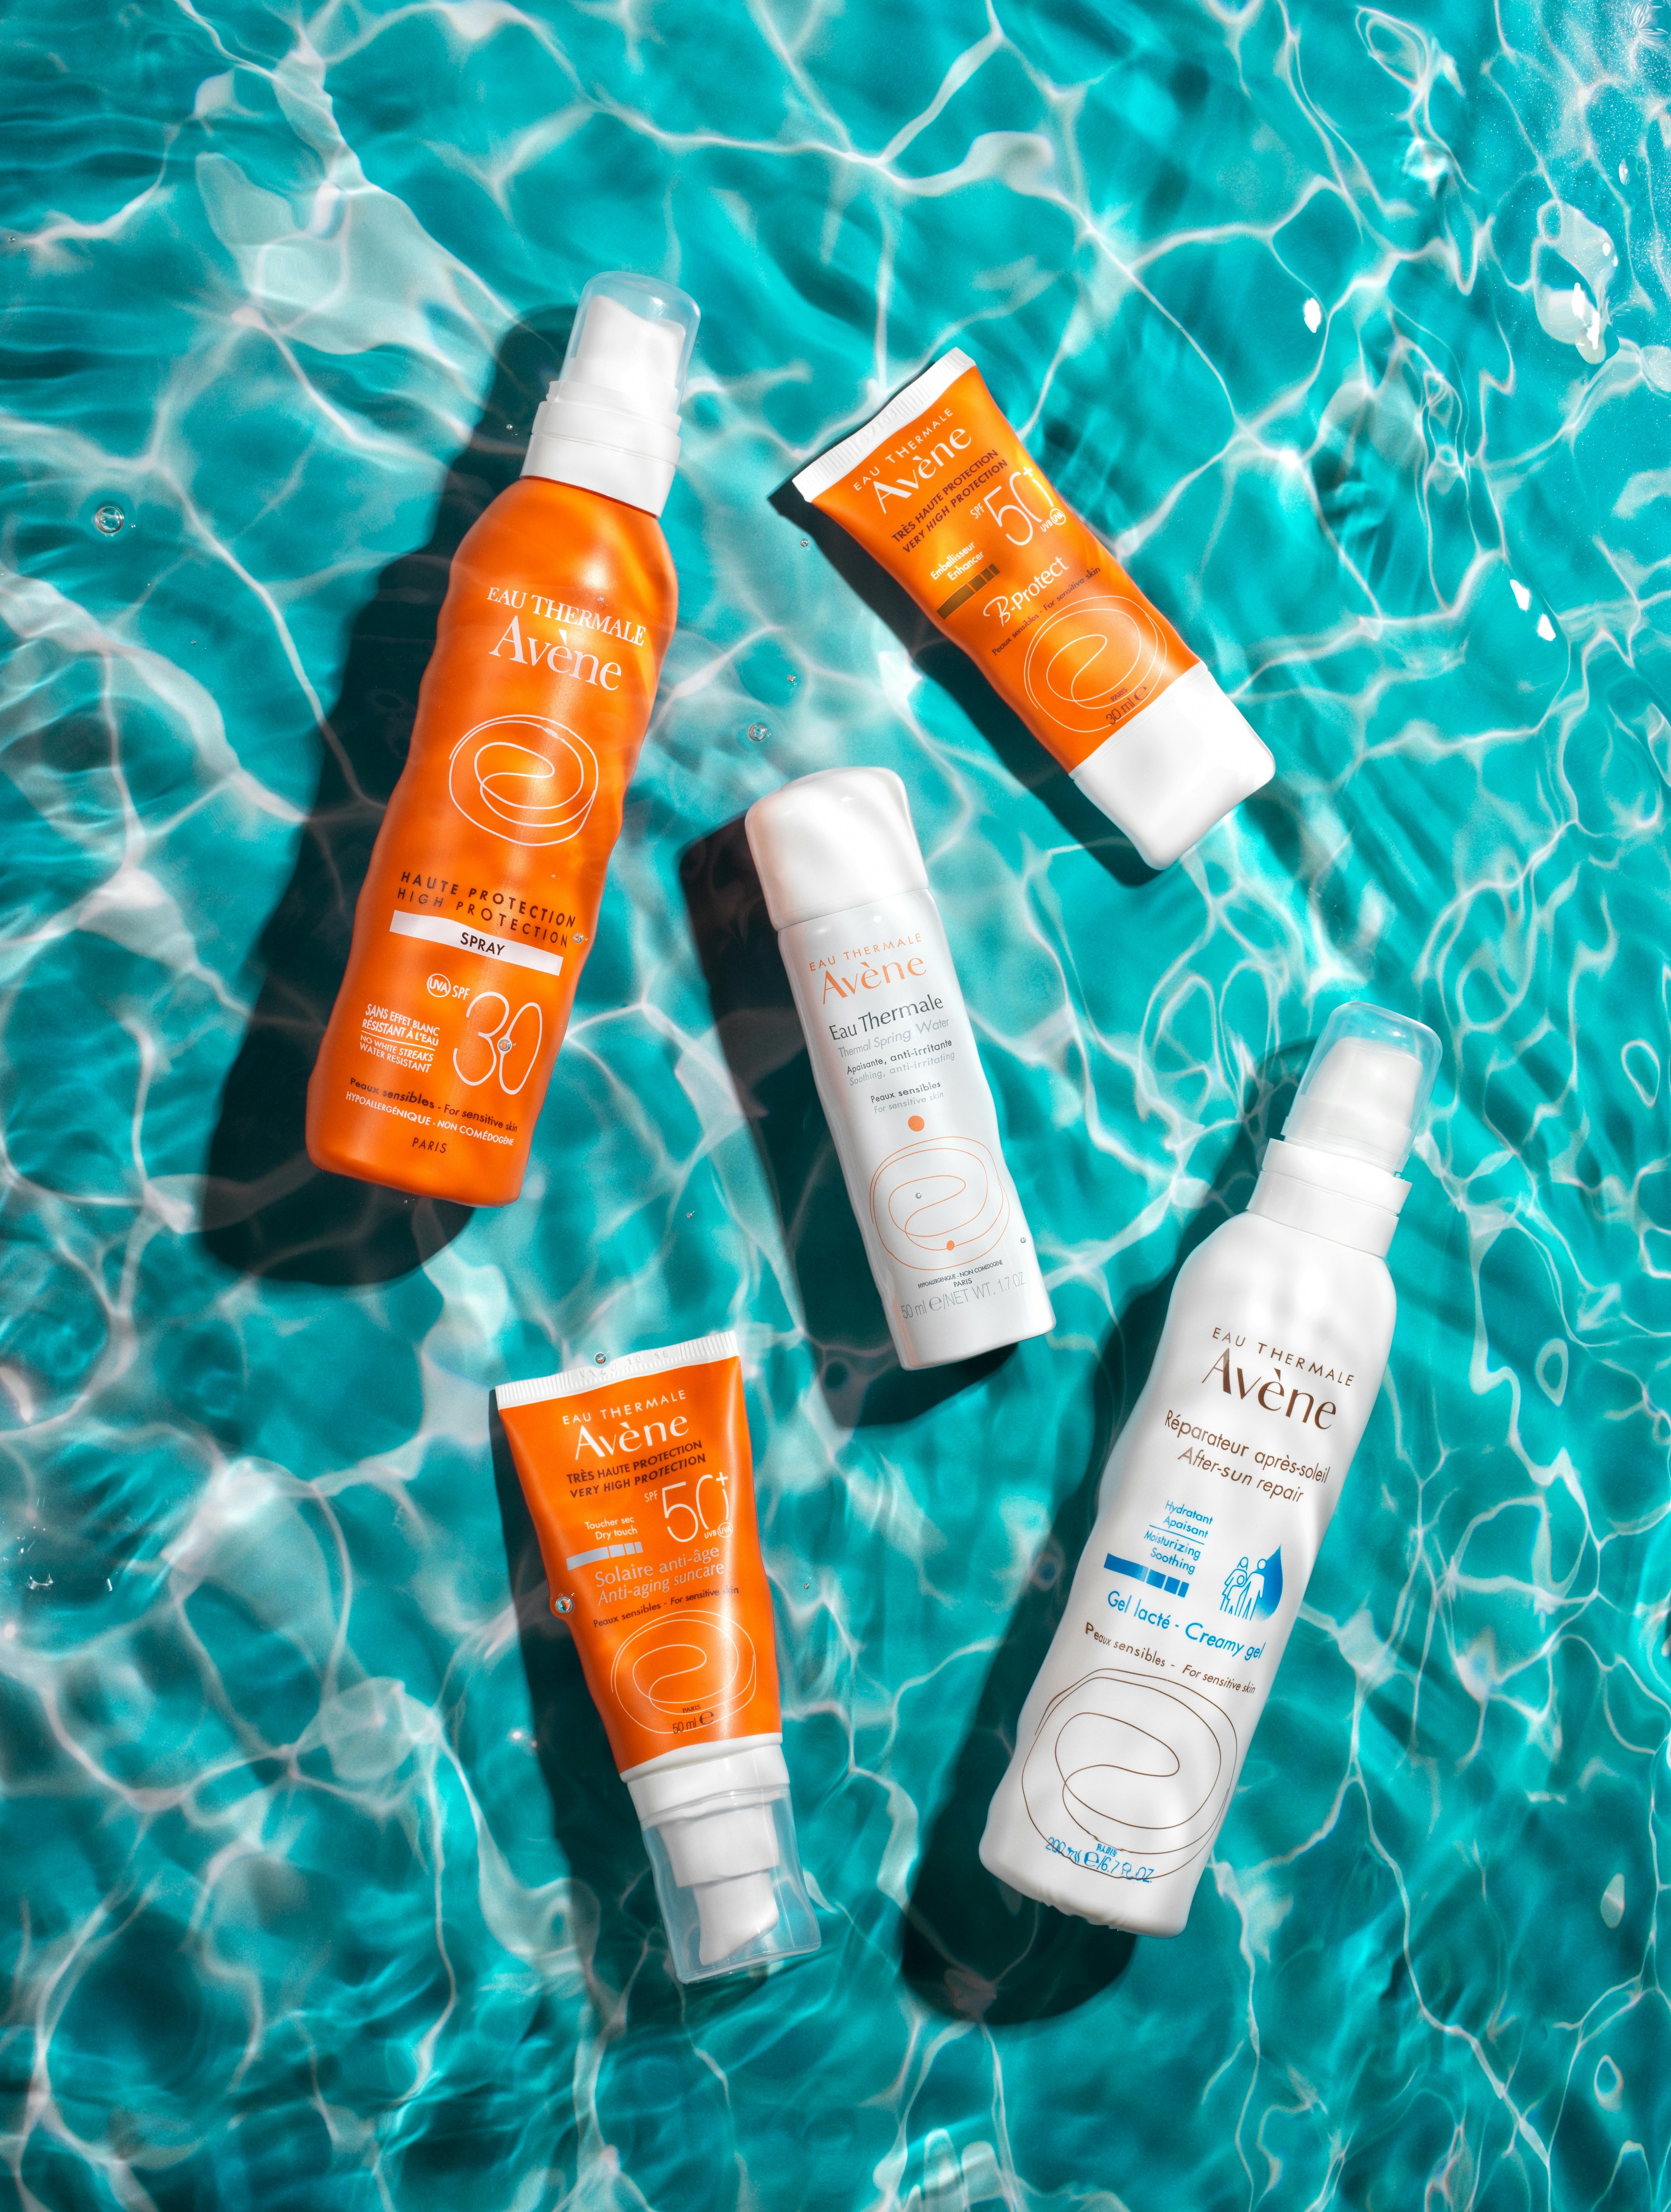 Beskyt og plej din hud i sommersolen med Avène solprodukter fra apoteket